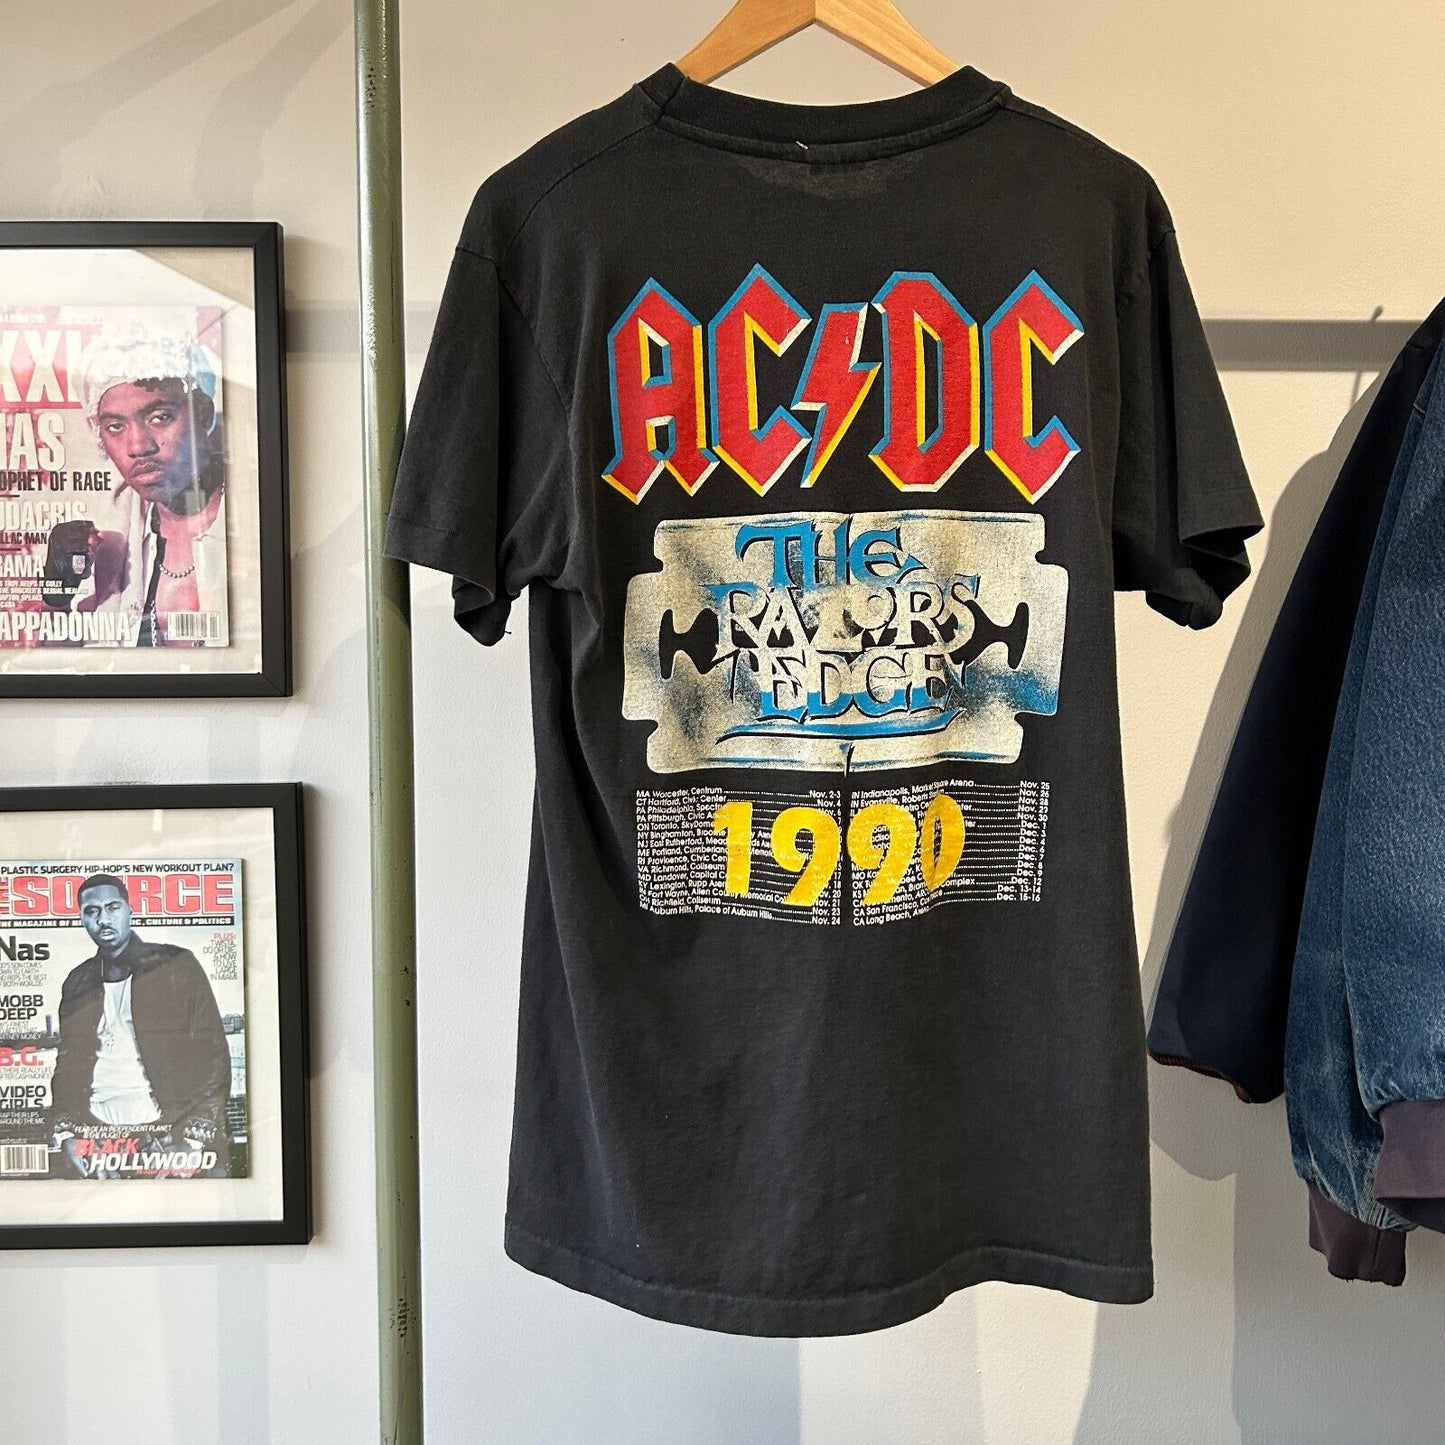 VINTAGE 1990 | ACDC The Razors Edges Concert Band T-Shirt sz M Adult